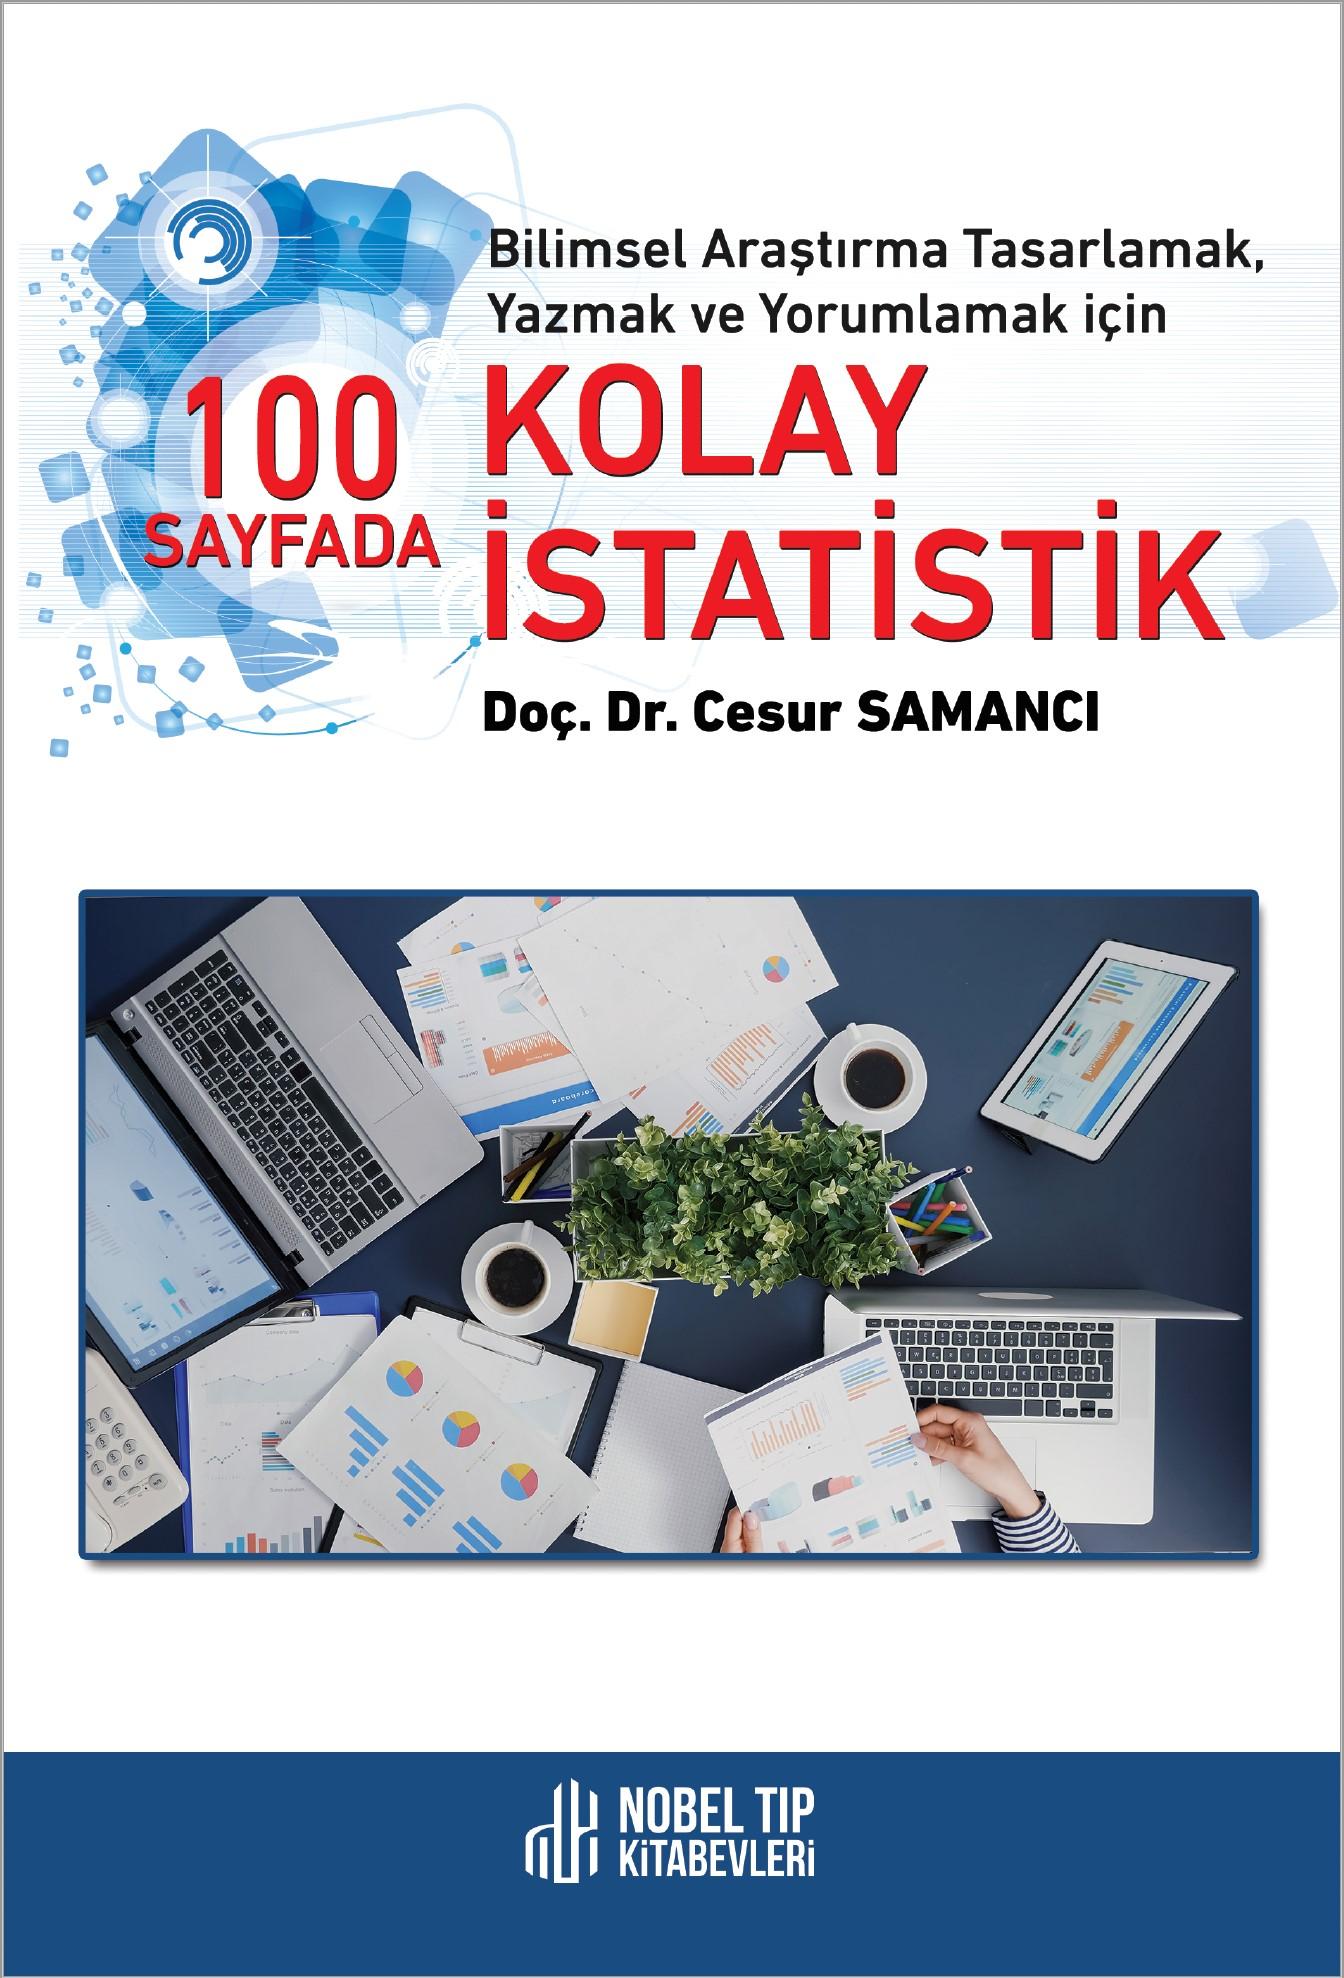 Bilimsel Araştırma Tasarlamak, Yazmak ve Yorumlamak için 100 Sayfada Kolay İstatistik